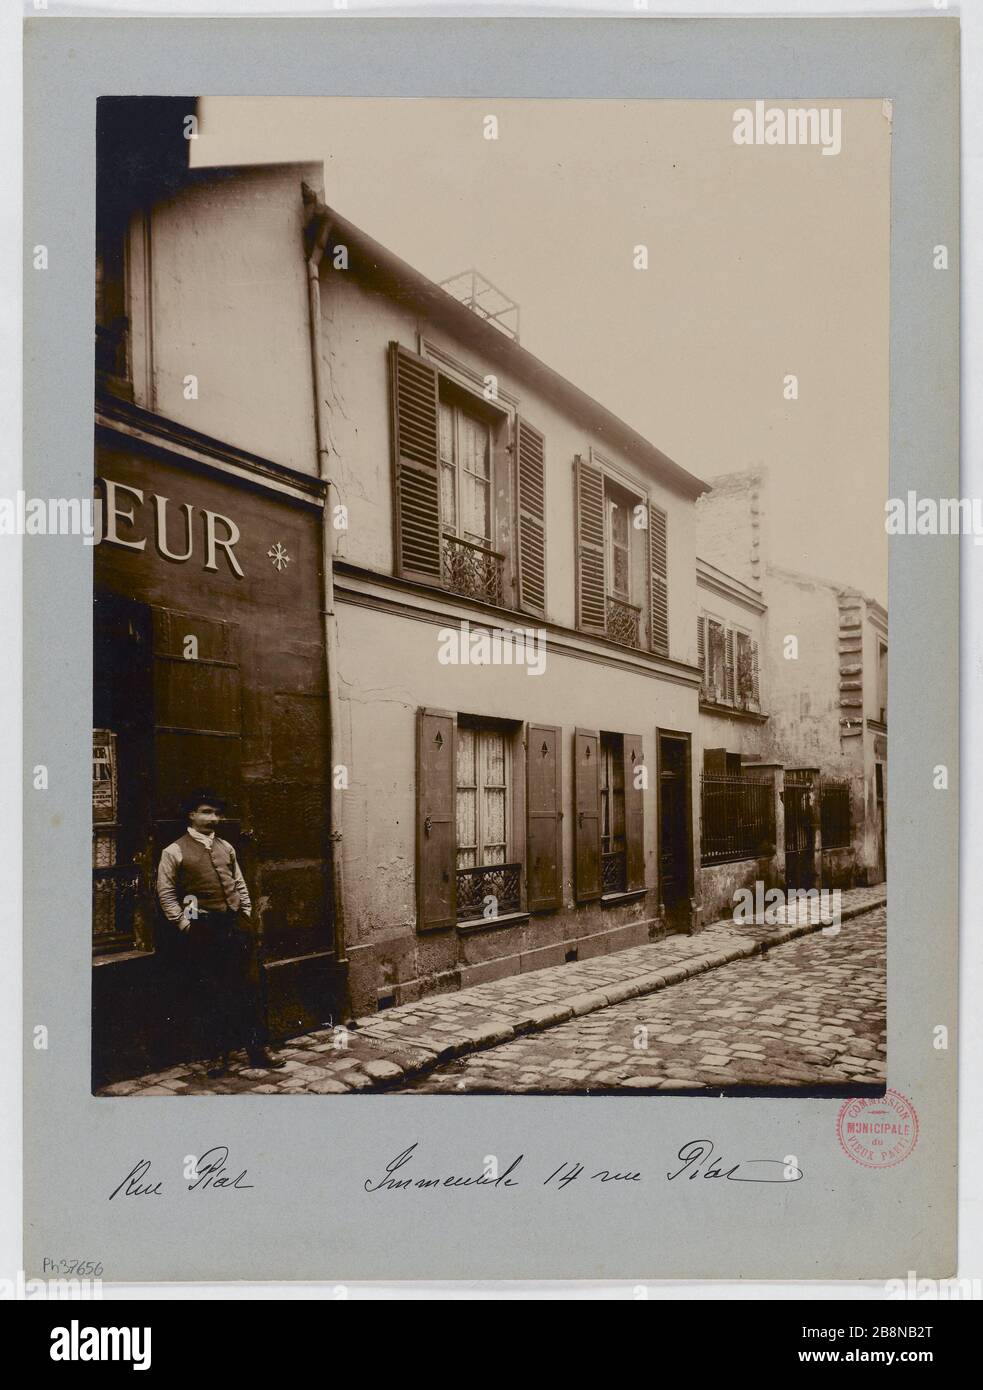 Building, 14 rue Piat, Paris (twentieth arr.) Immeuble, 14 rue Piat, Paris (XXème arr.). 1897-1898. Union Photographique Française. Paris, musée Carnavalet. Stock Photo